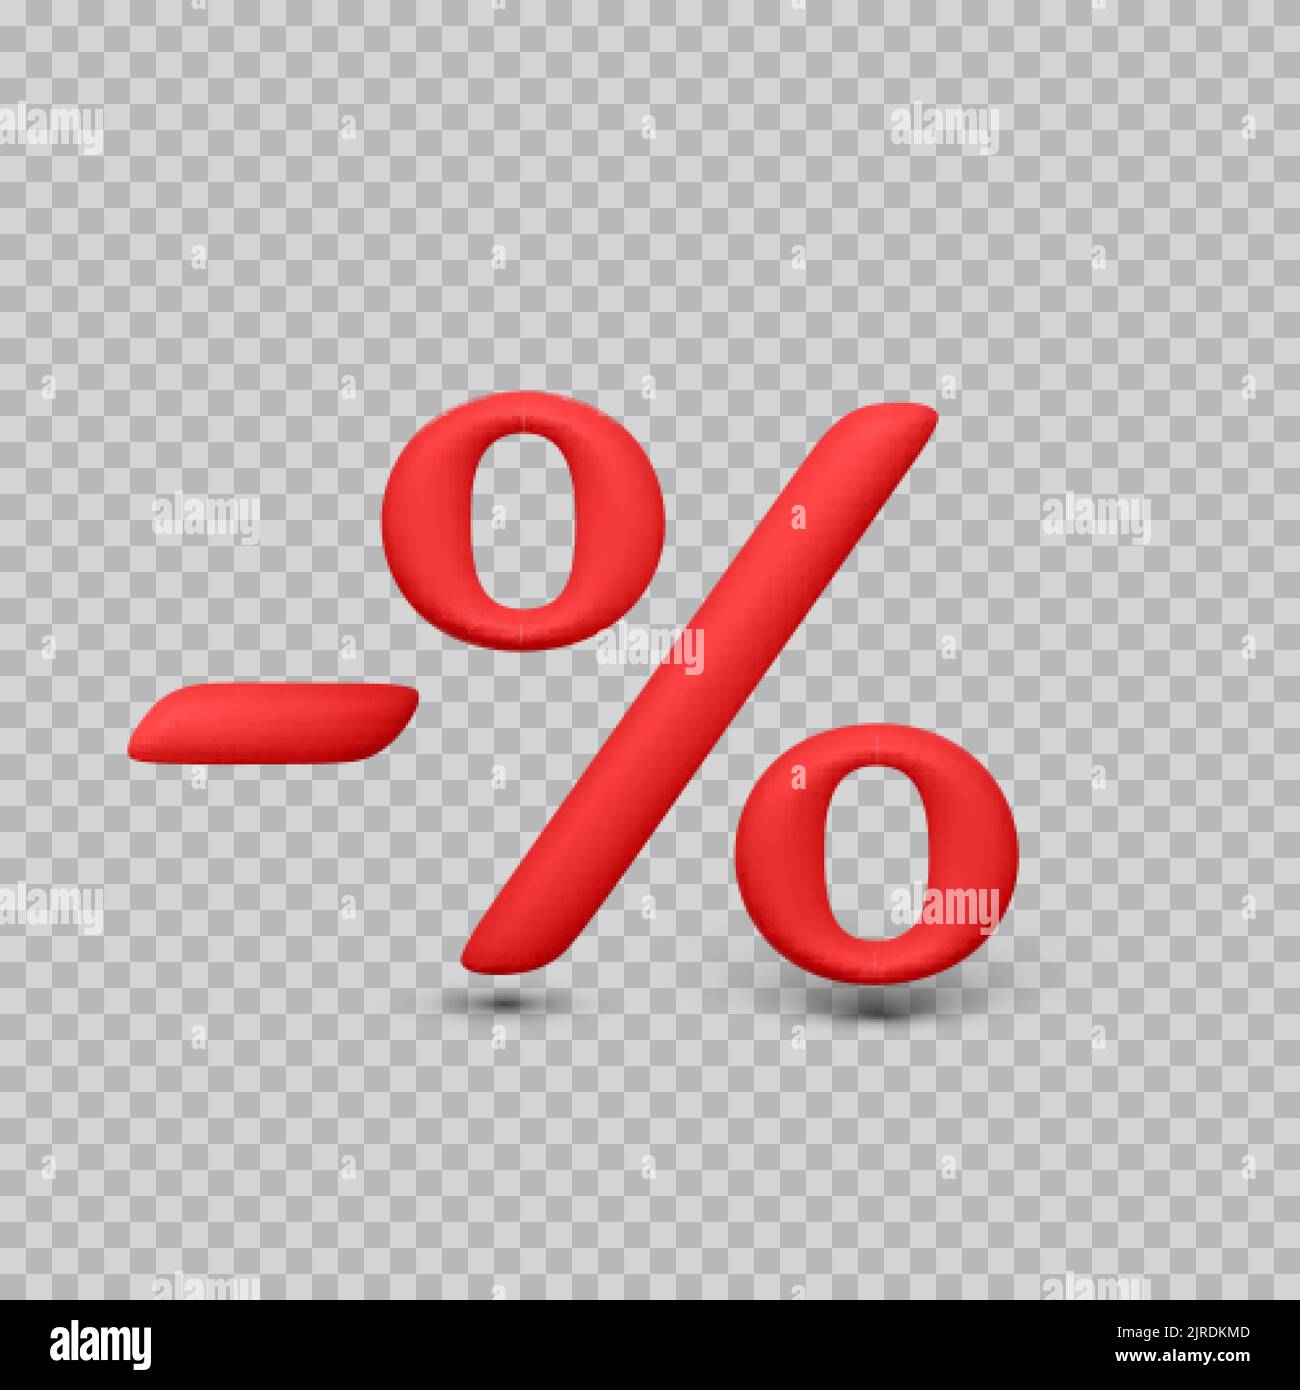 Carattere percentuale 3D con il segno meno. Simbolo percentuale rosso su sfondo trasparente. Illustrazione vettoriale Illustrazione Vettoriale